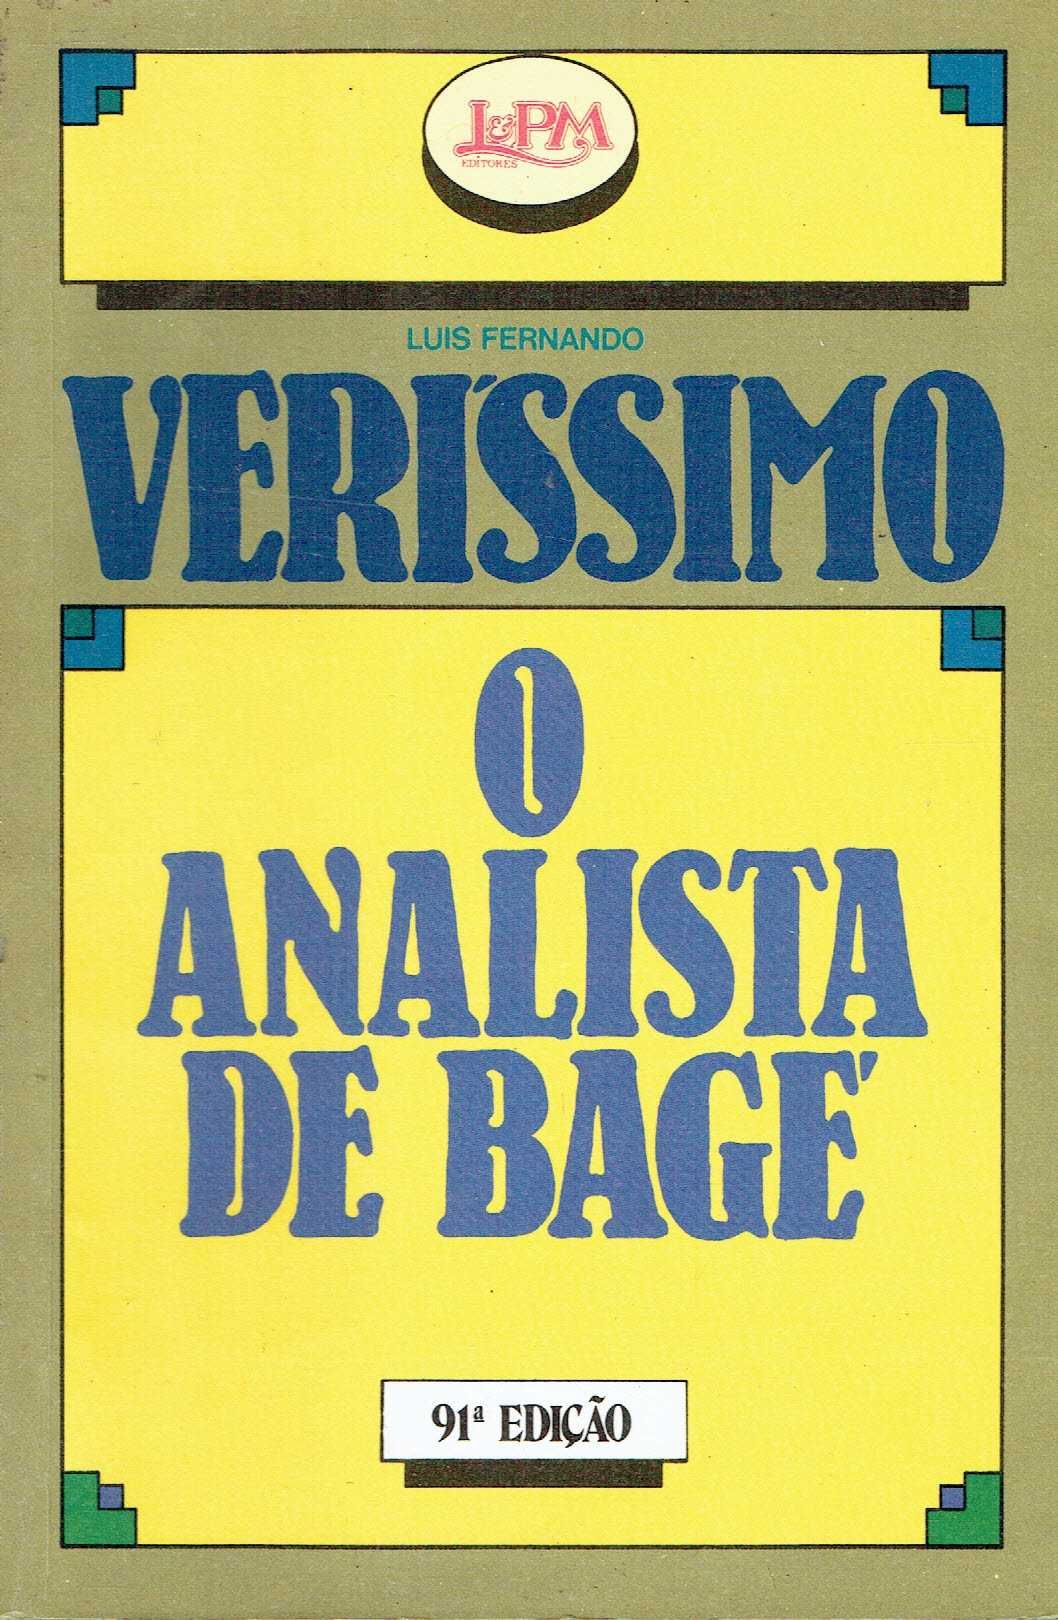 13590

O Analista de Bage
de Erico Veríssimo